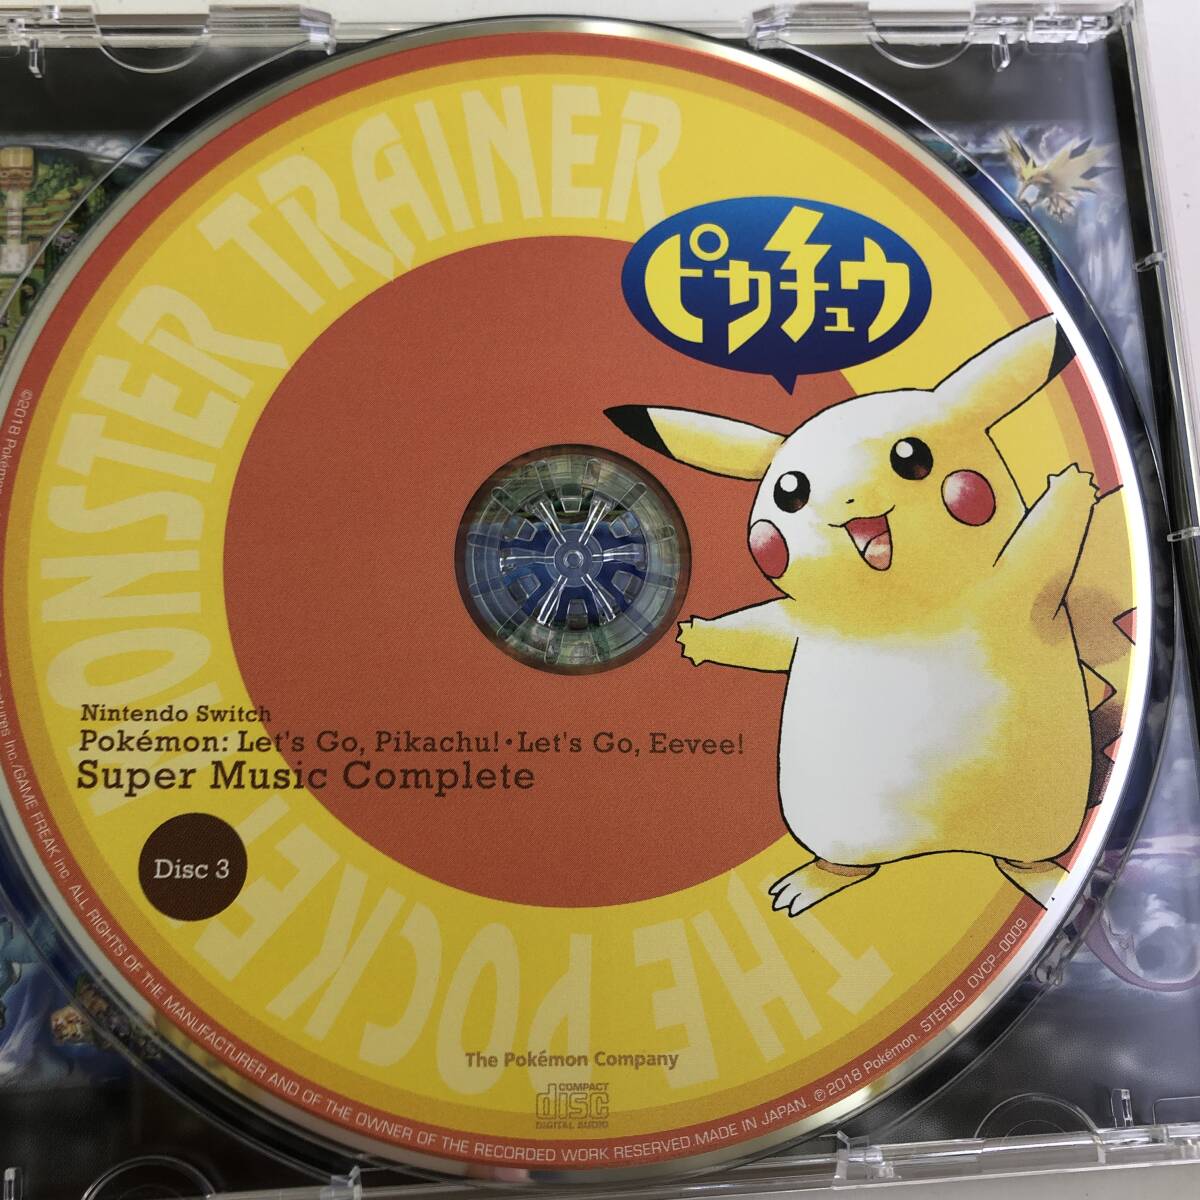 [ прекрасный товар ] саундтрек CD Nintendo Switch Pokemon Let*s Go! Пикачу *Let*s Go!i-bi super музыка * Complete 